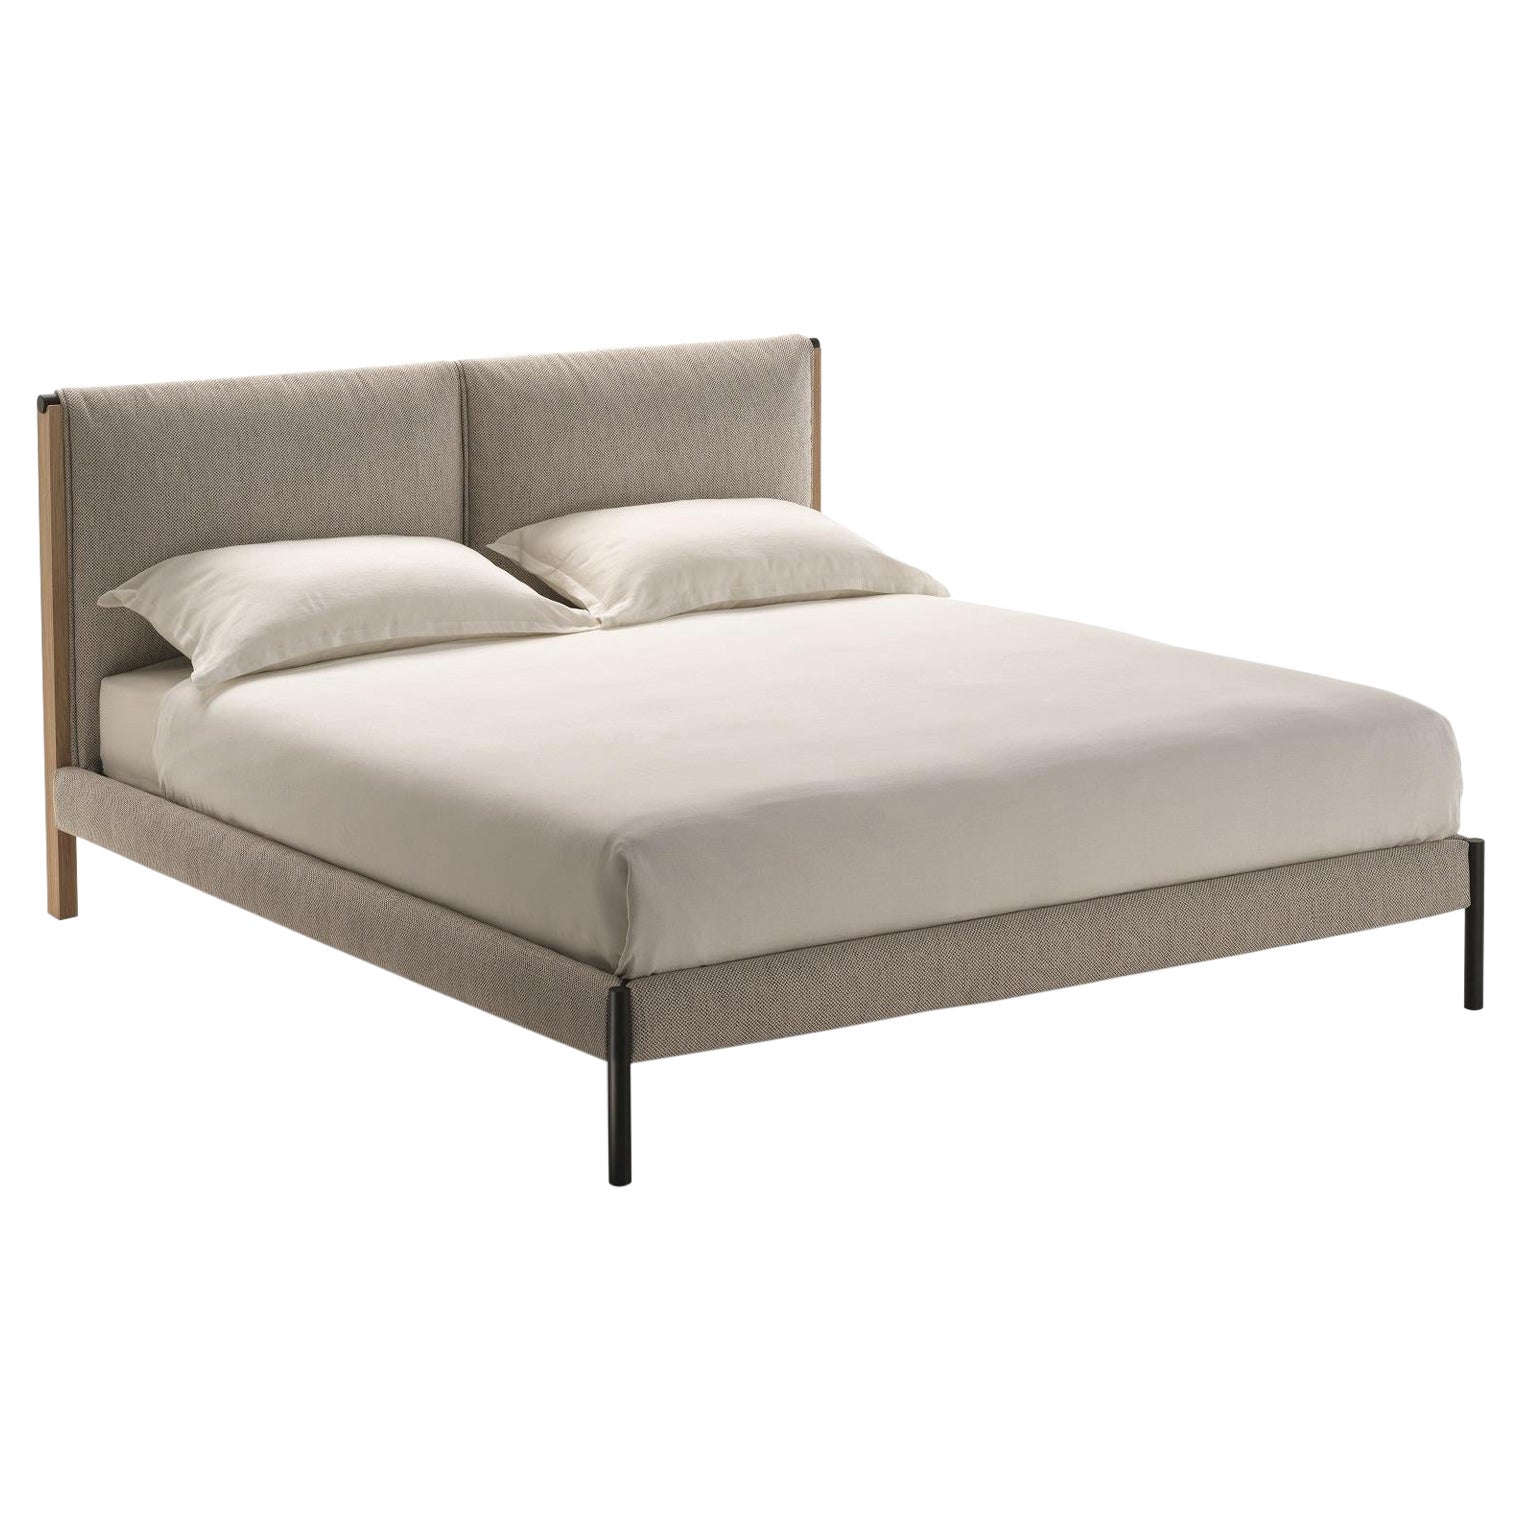 Zanotta Medium Ricordi-Bett mit einseitiger Federung und Spitzenpolsterung